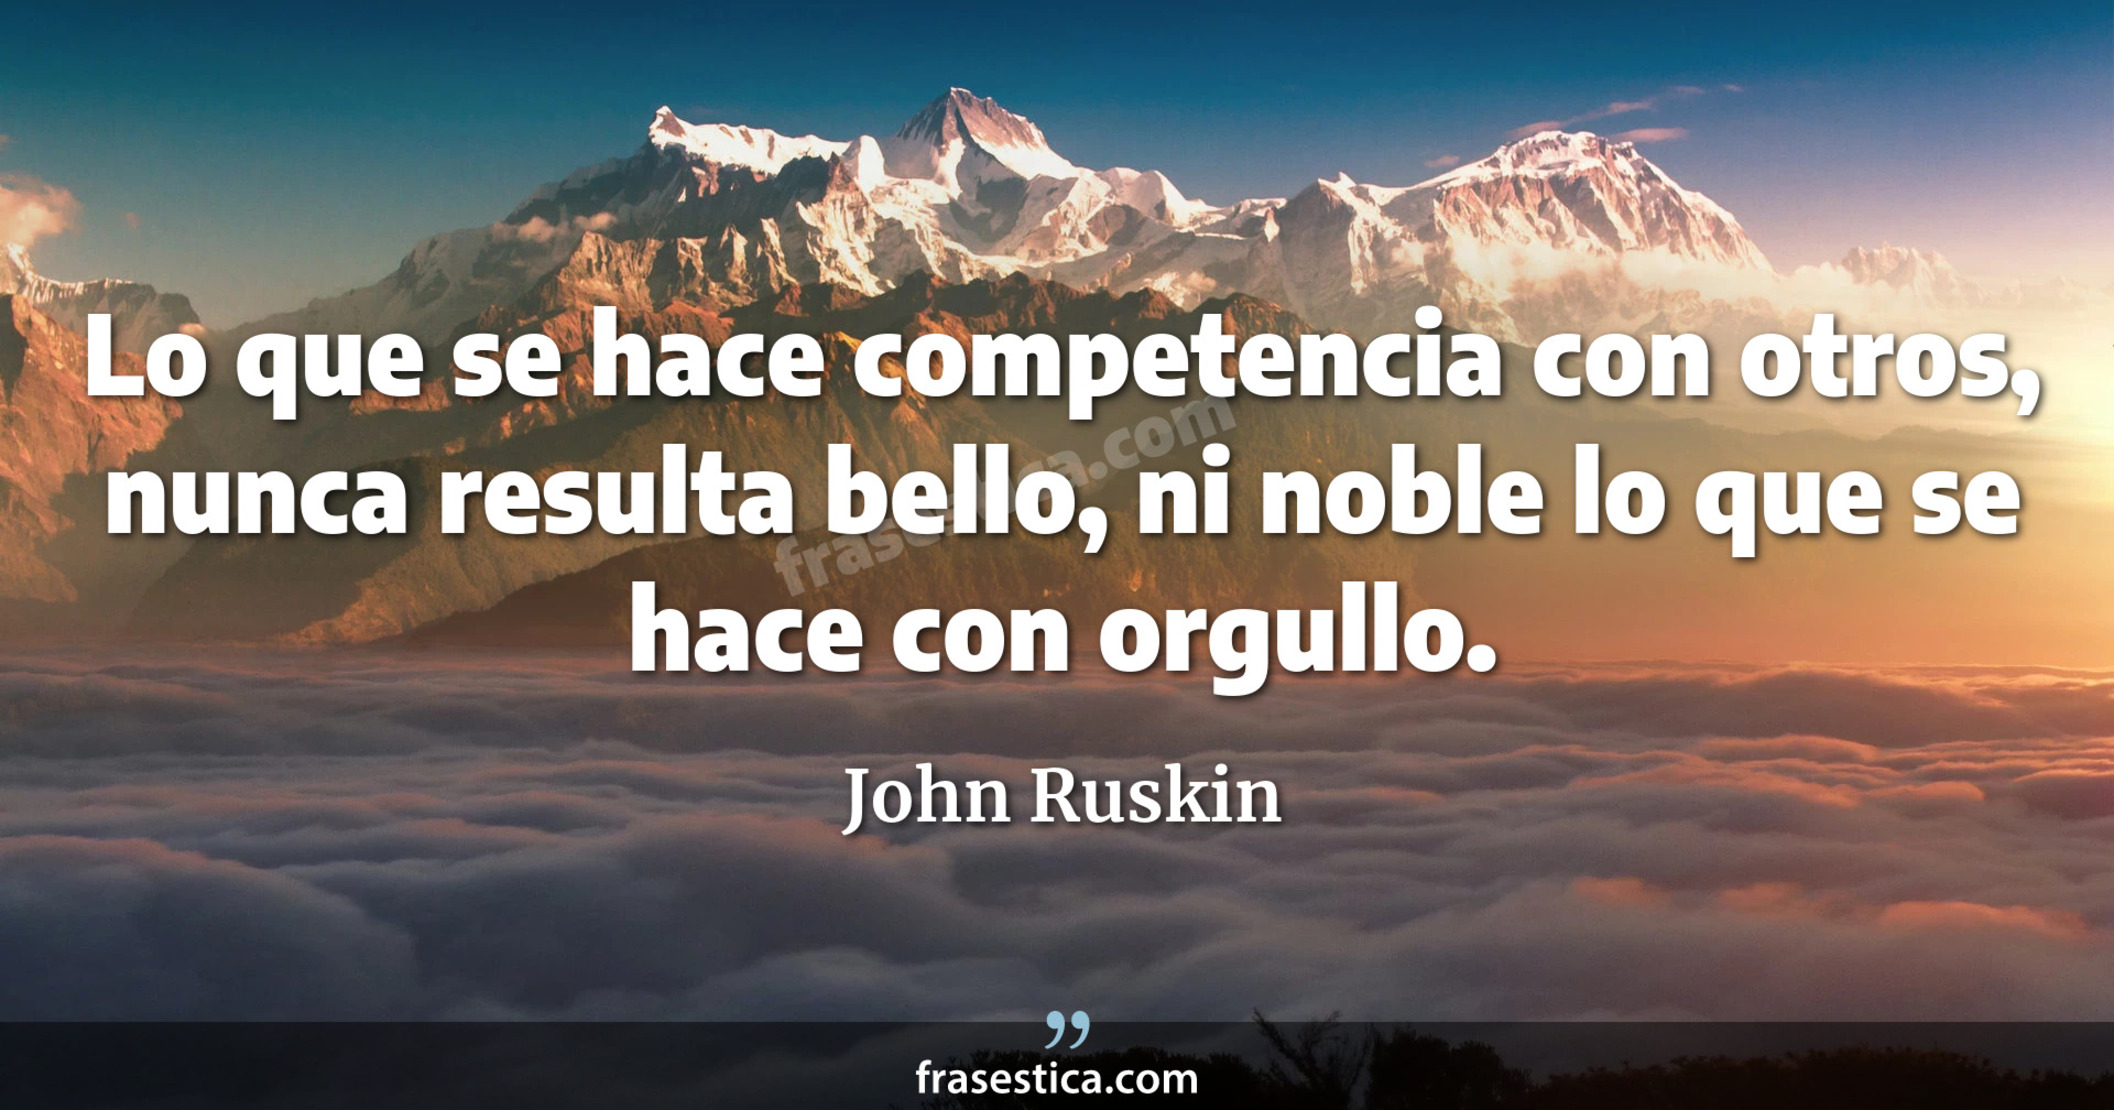 Lo que se hace competencia con otros, nunca resulta bello, ni noble lo que se hace con orgullo. - John Ruskin